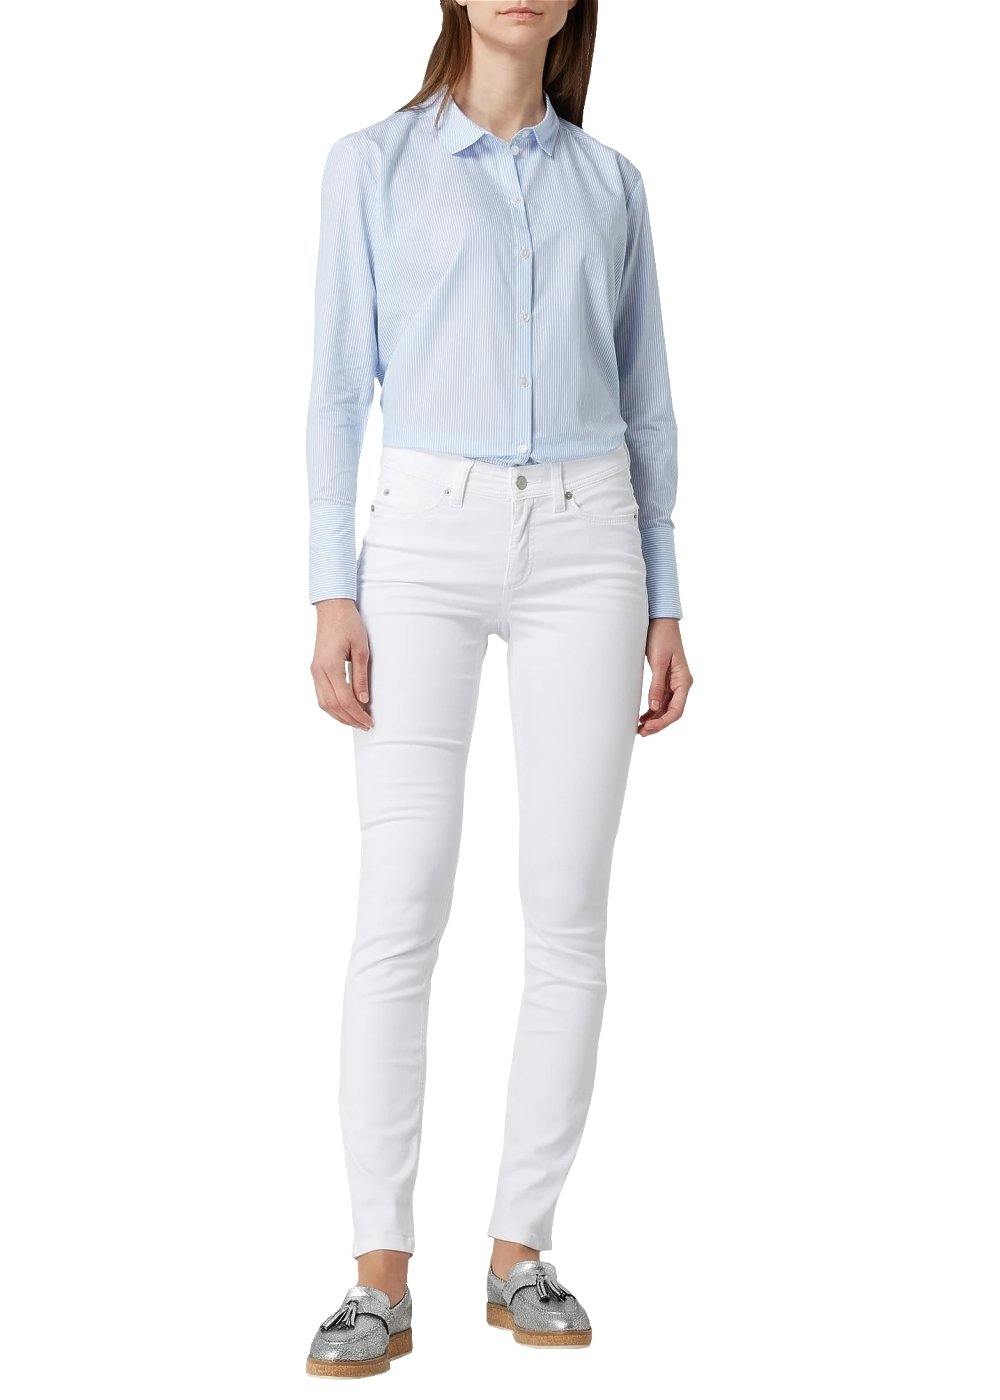 Cambio Jeans Parla in weiß online kaufen. Slim fit Jeans mit perfekter Passform von Cambio. Weiße Damen Jeans in weicher Denim Stretchware mit normaler Hosenbeinlänge aus der neuen Cambio Kollektion.